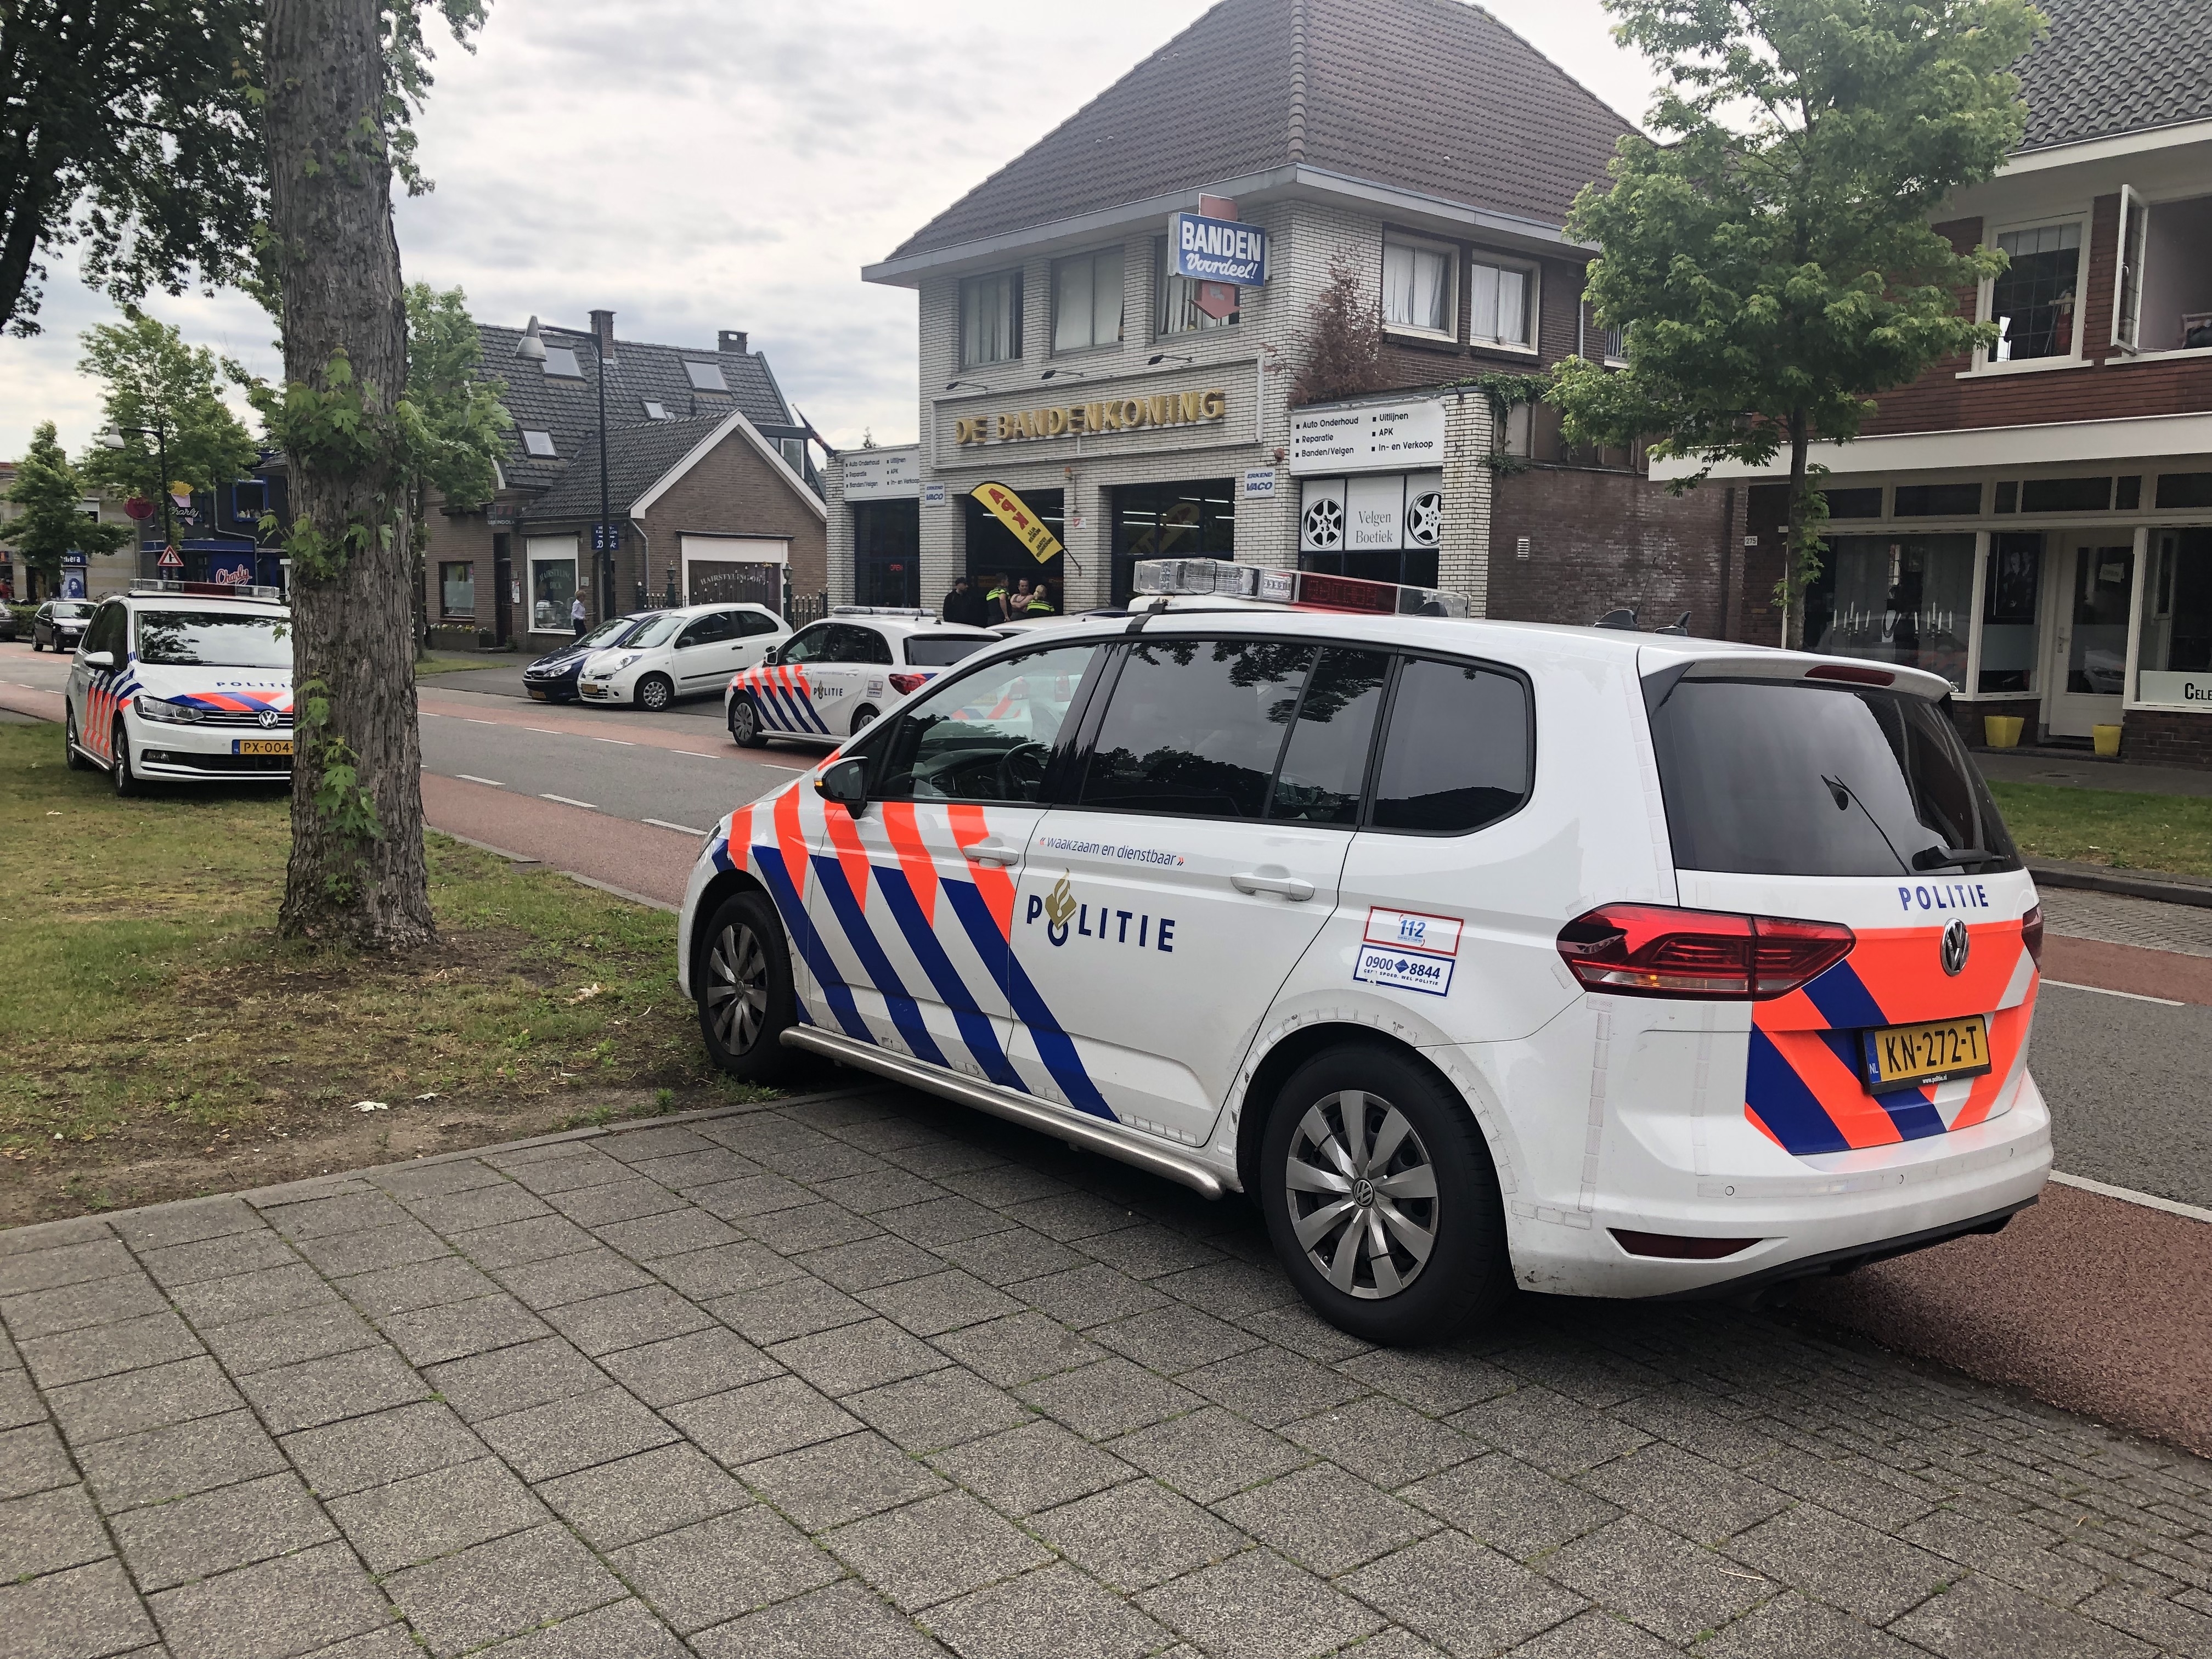 Steekincident bij Bandenkoning in Apeldoorn